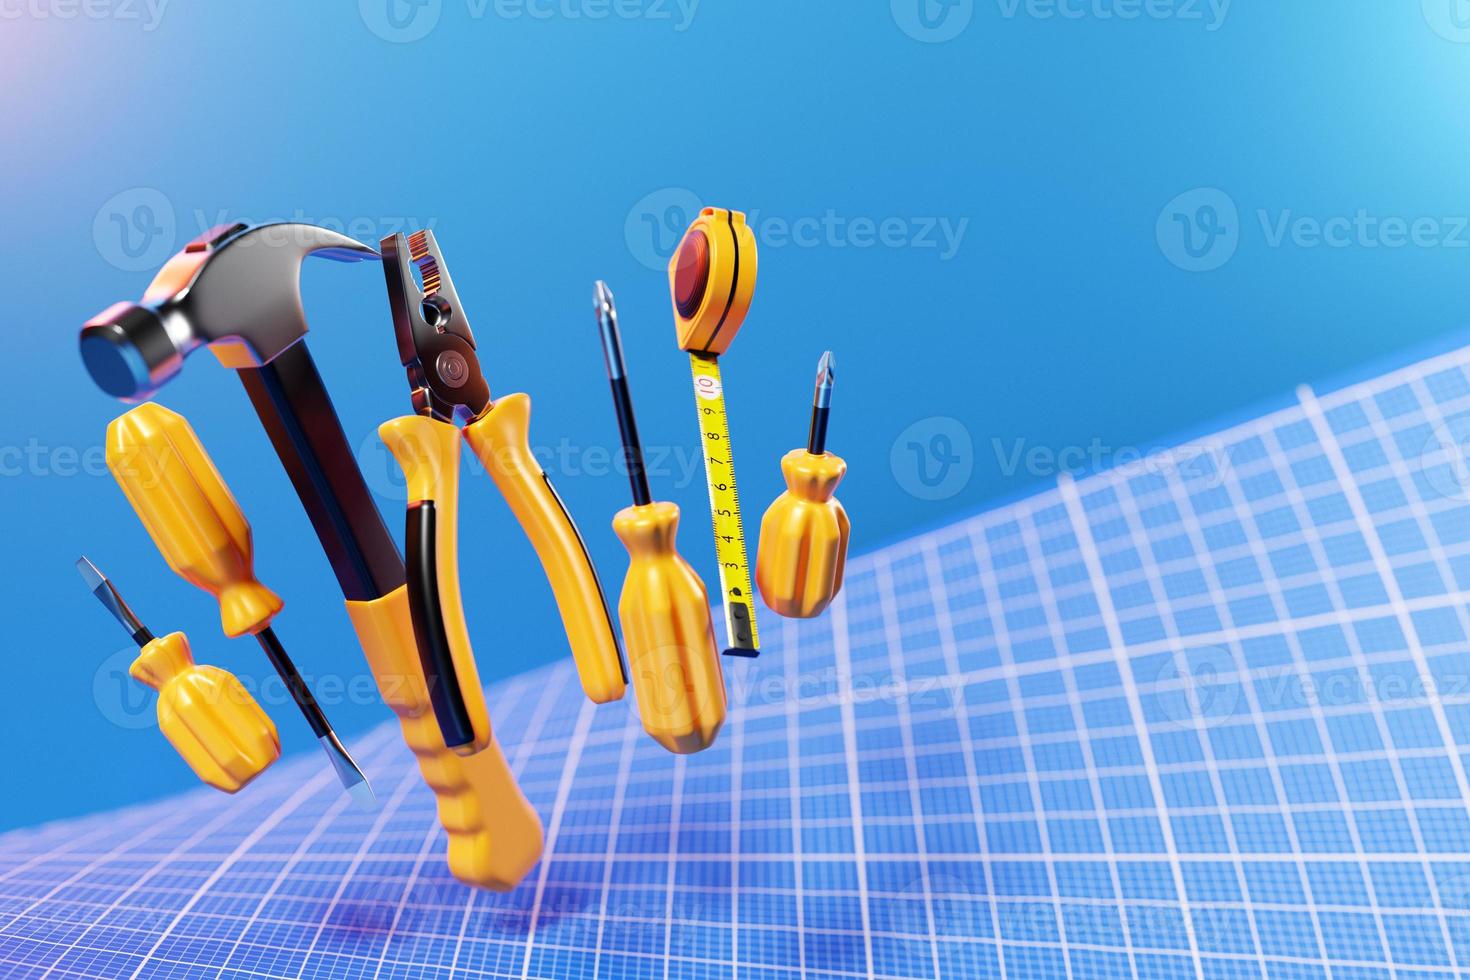 illustration 3d d'un marteau en métal avec une poignée jaune, des tournevis, des pinces, des outils à main photo